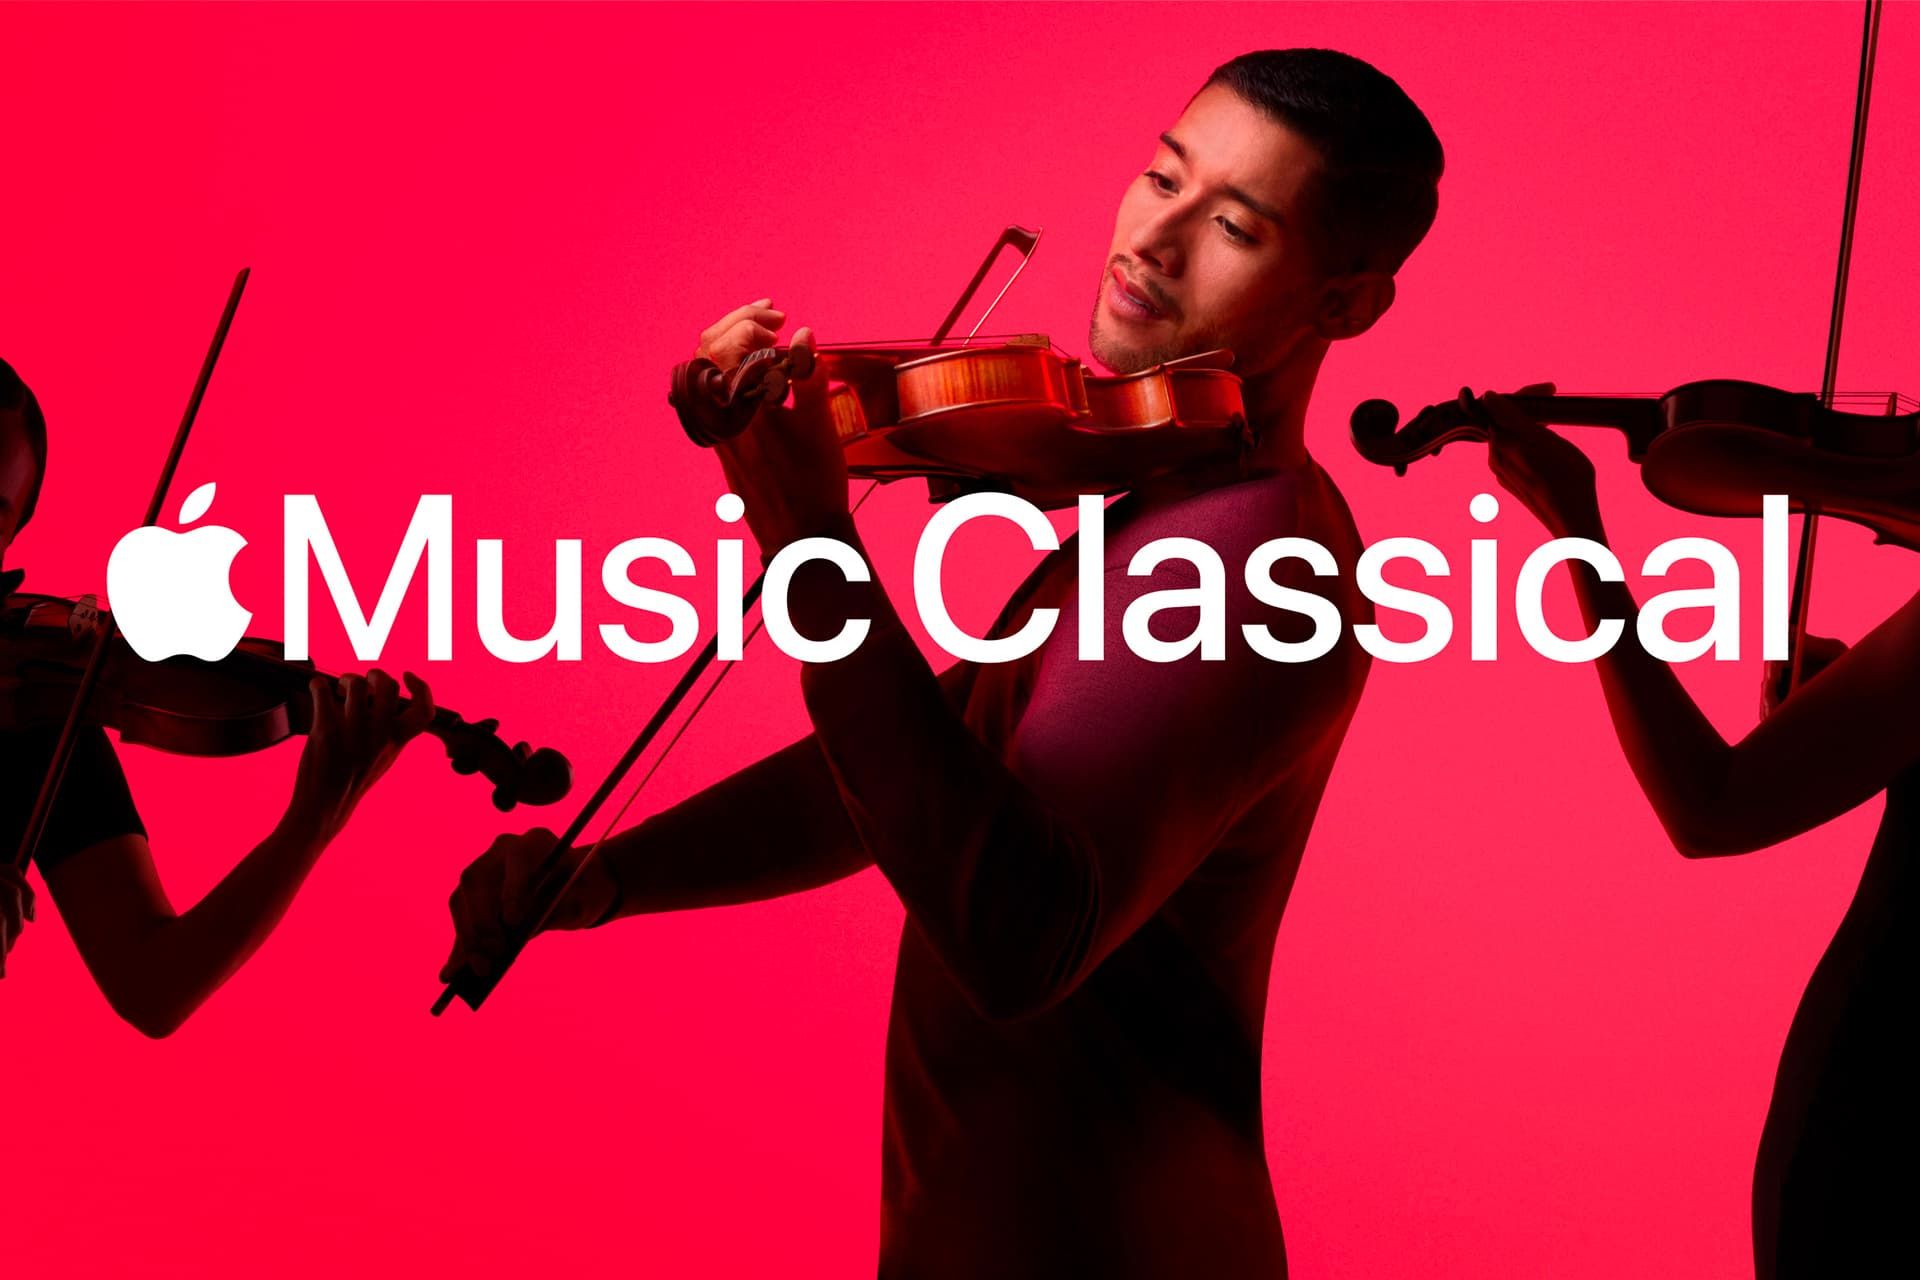 مرد جوان در حال ساز زدن اپل موزیک کلاسیکال / Apple Music Classical